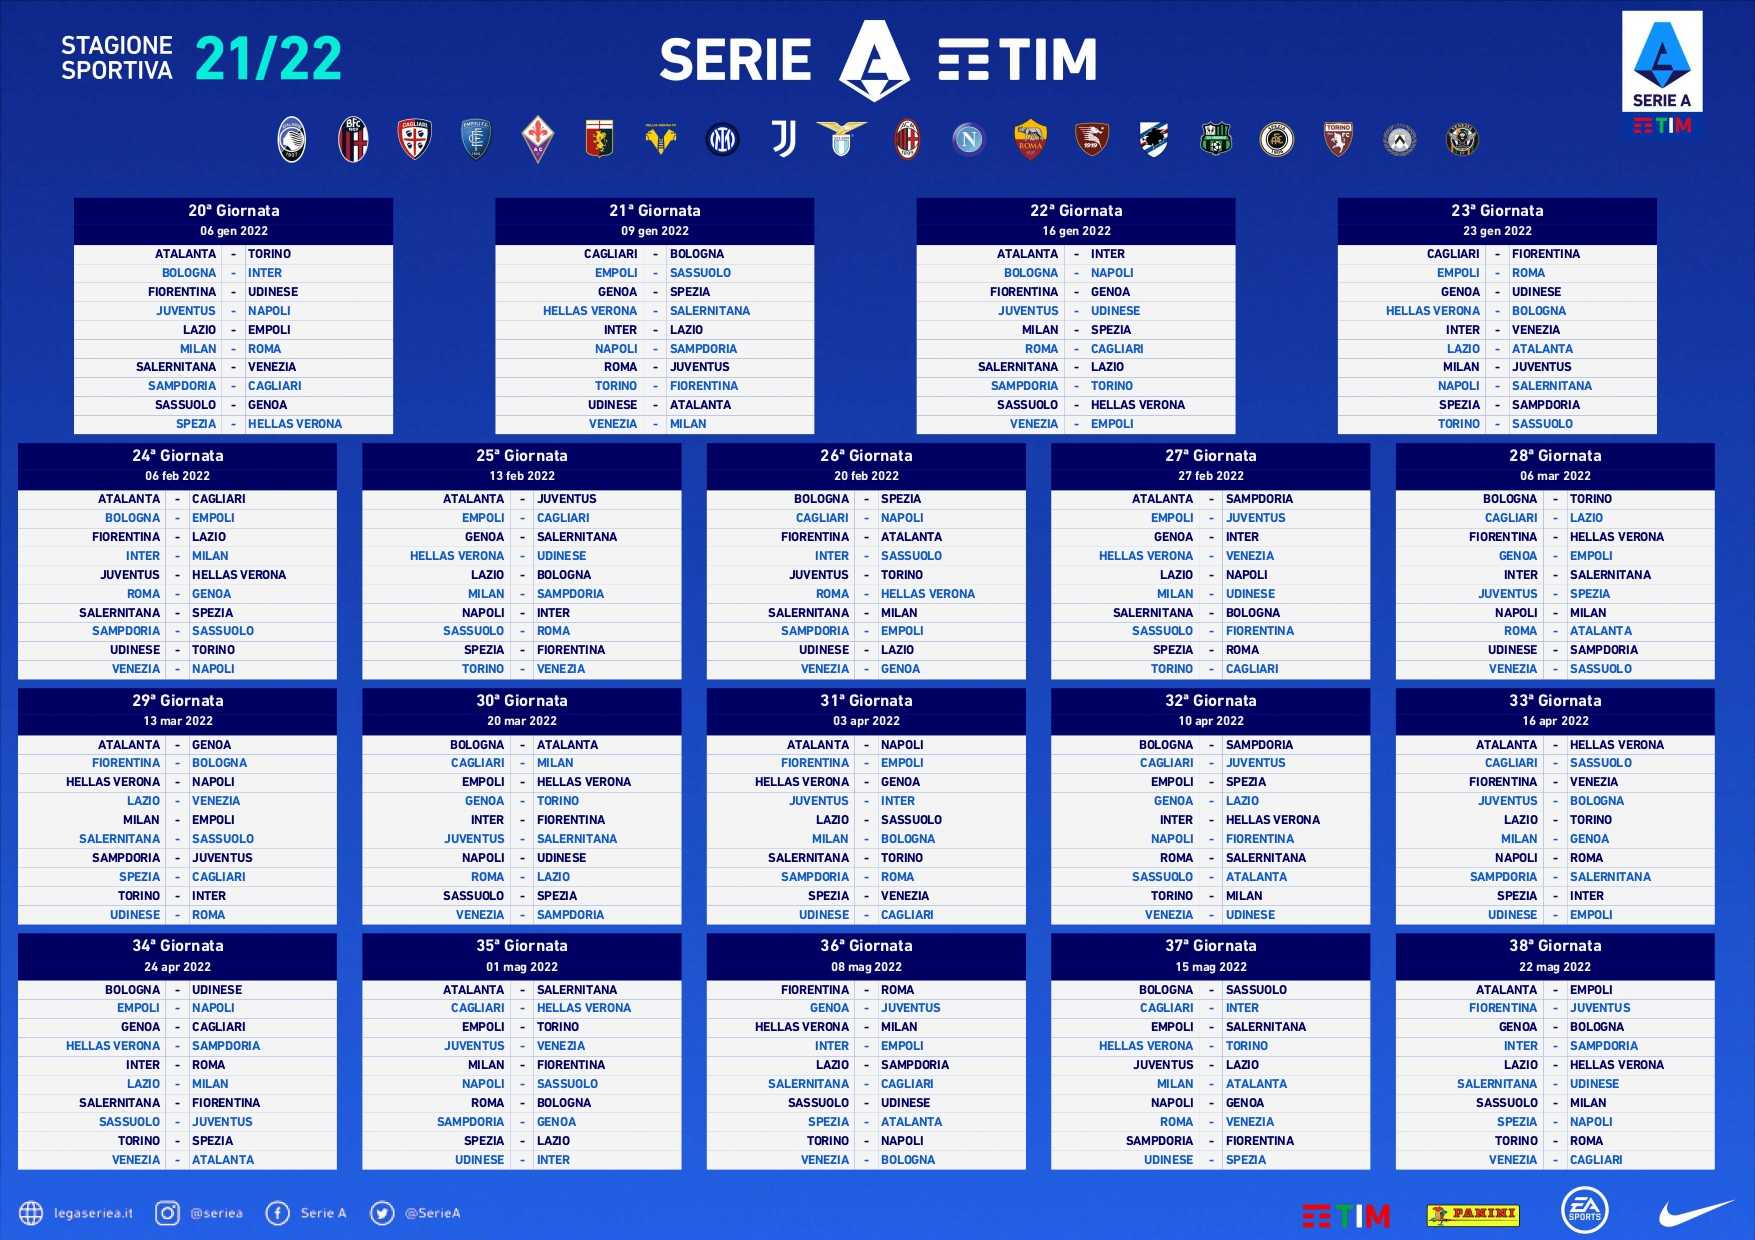  Calcio Saga 21/22 Calendario-ritorno-serie-a-2021-2022